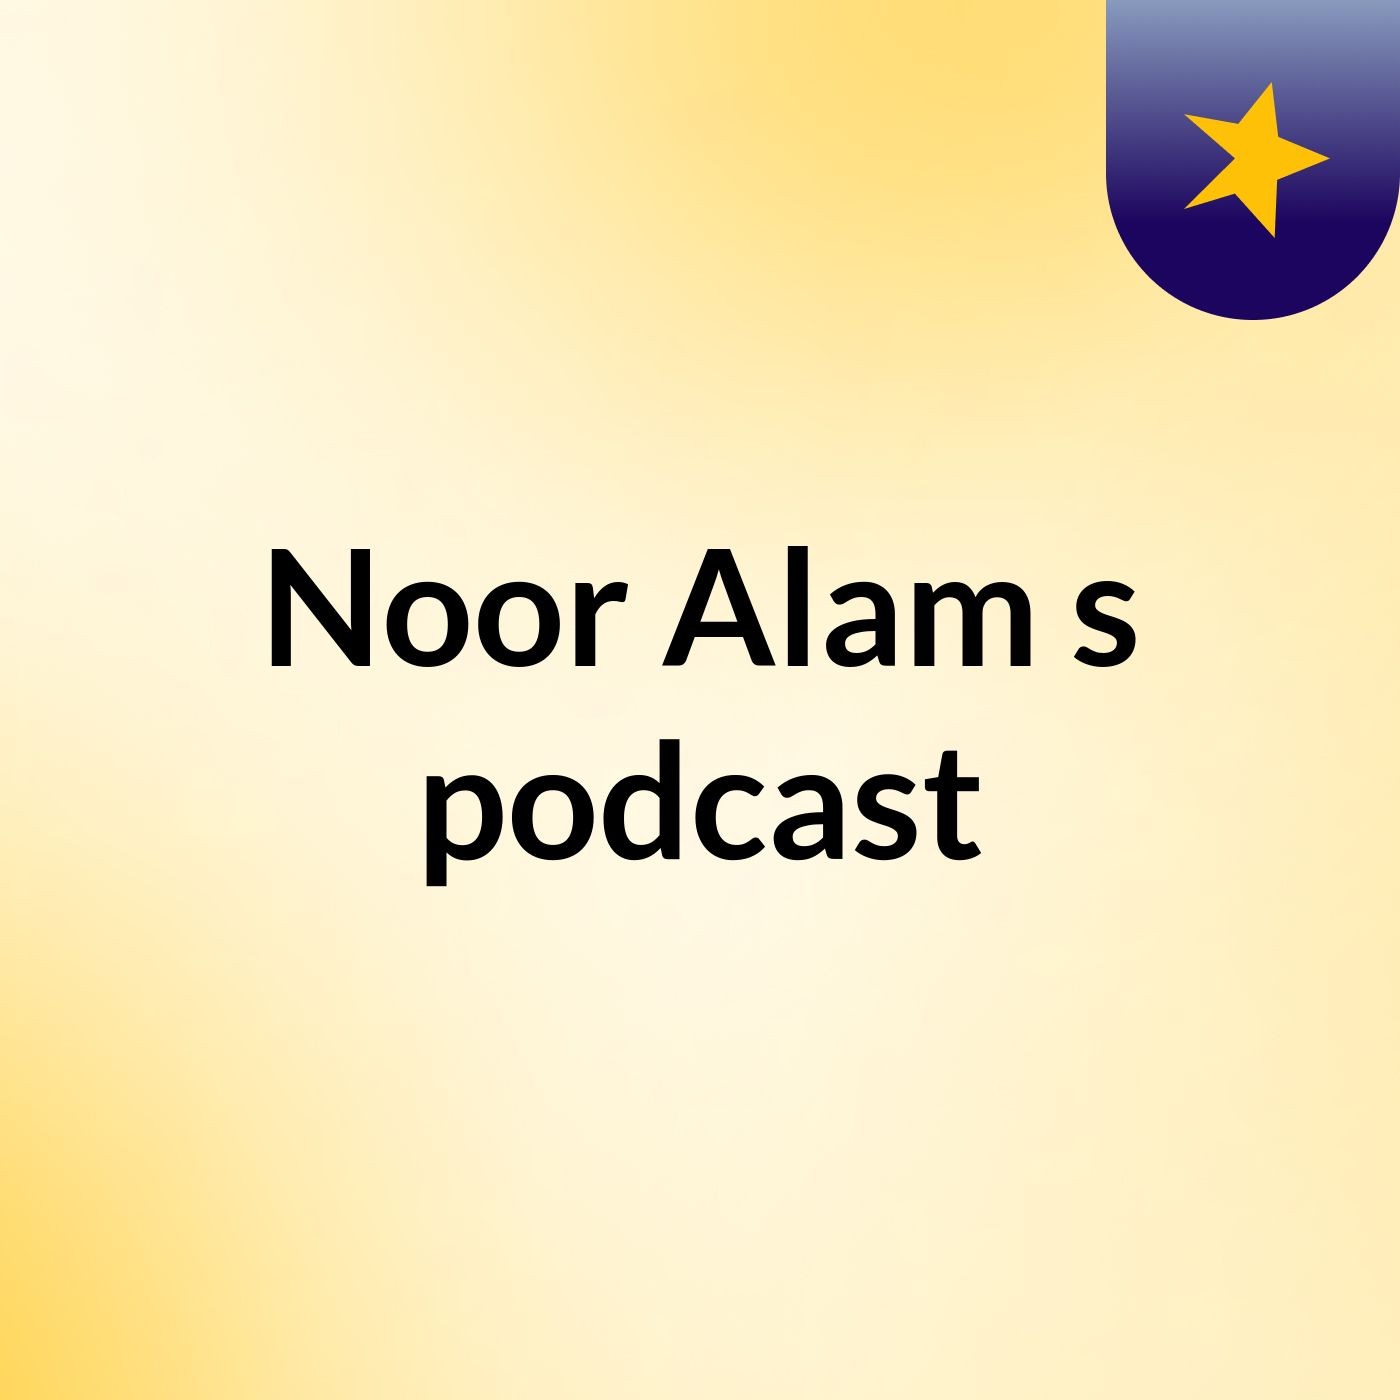 Noor Alam's podcast